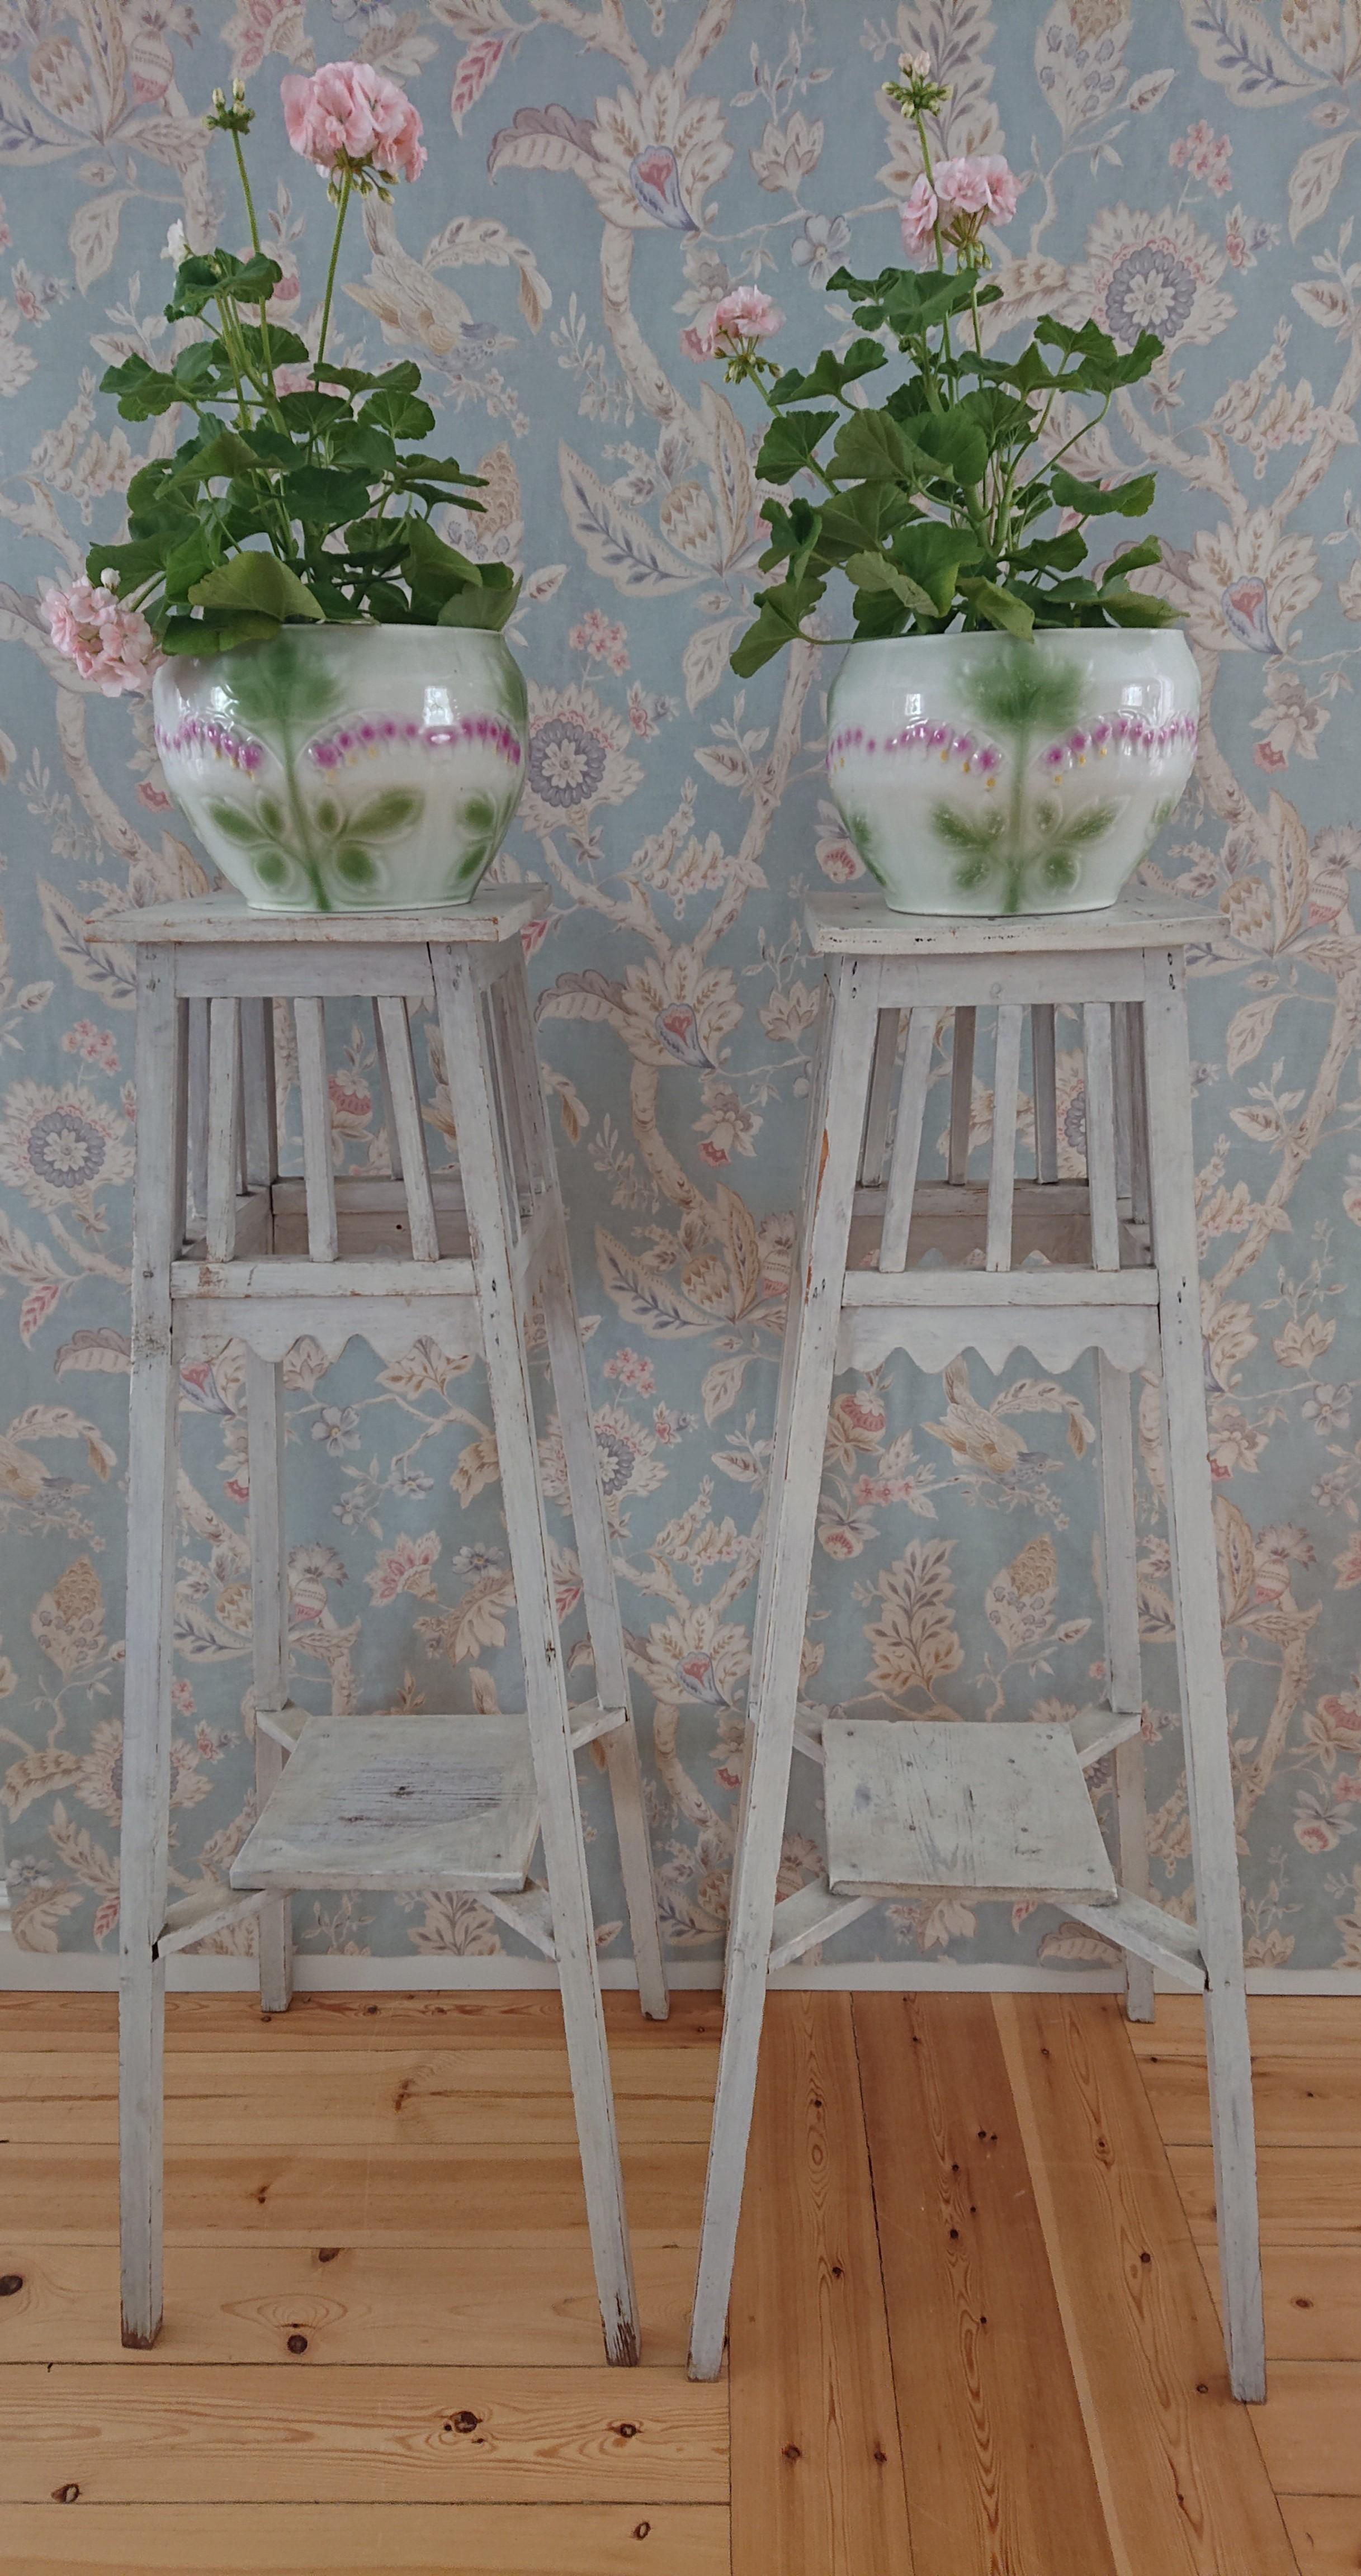 Ein wunderschönes Paar von Sockeln aus dem 19. Jahrhundert.
Der Sockel hat eine unberührte Originalbemalung.
Schöne graue Farbe.
Schöne Details mit Schnittwölbung und Rippen.
So schön mit Blumen an der Spitze.
Der Sockel hat eine schöne